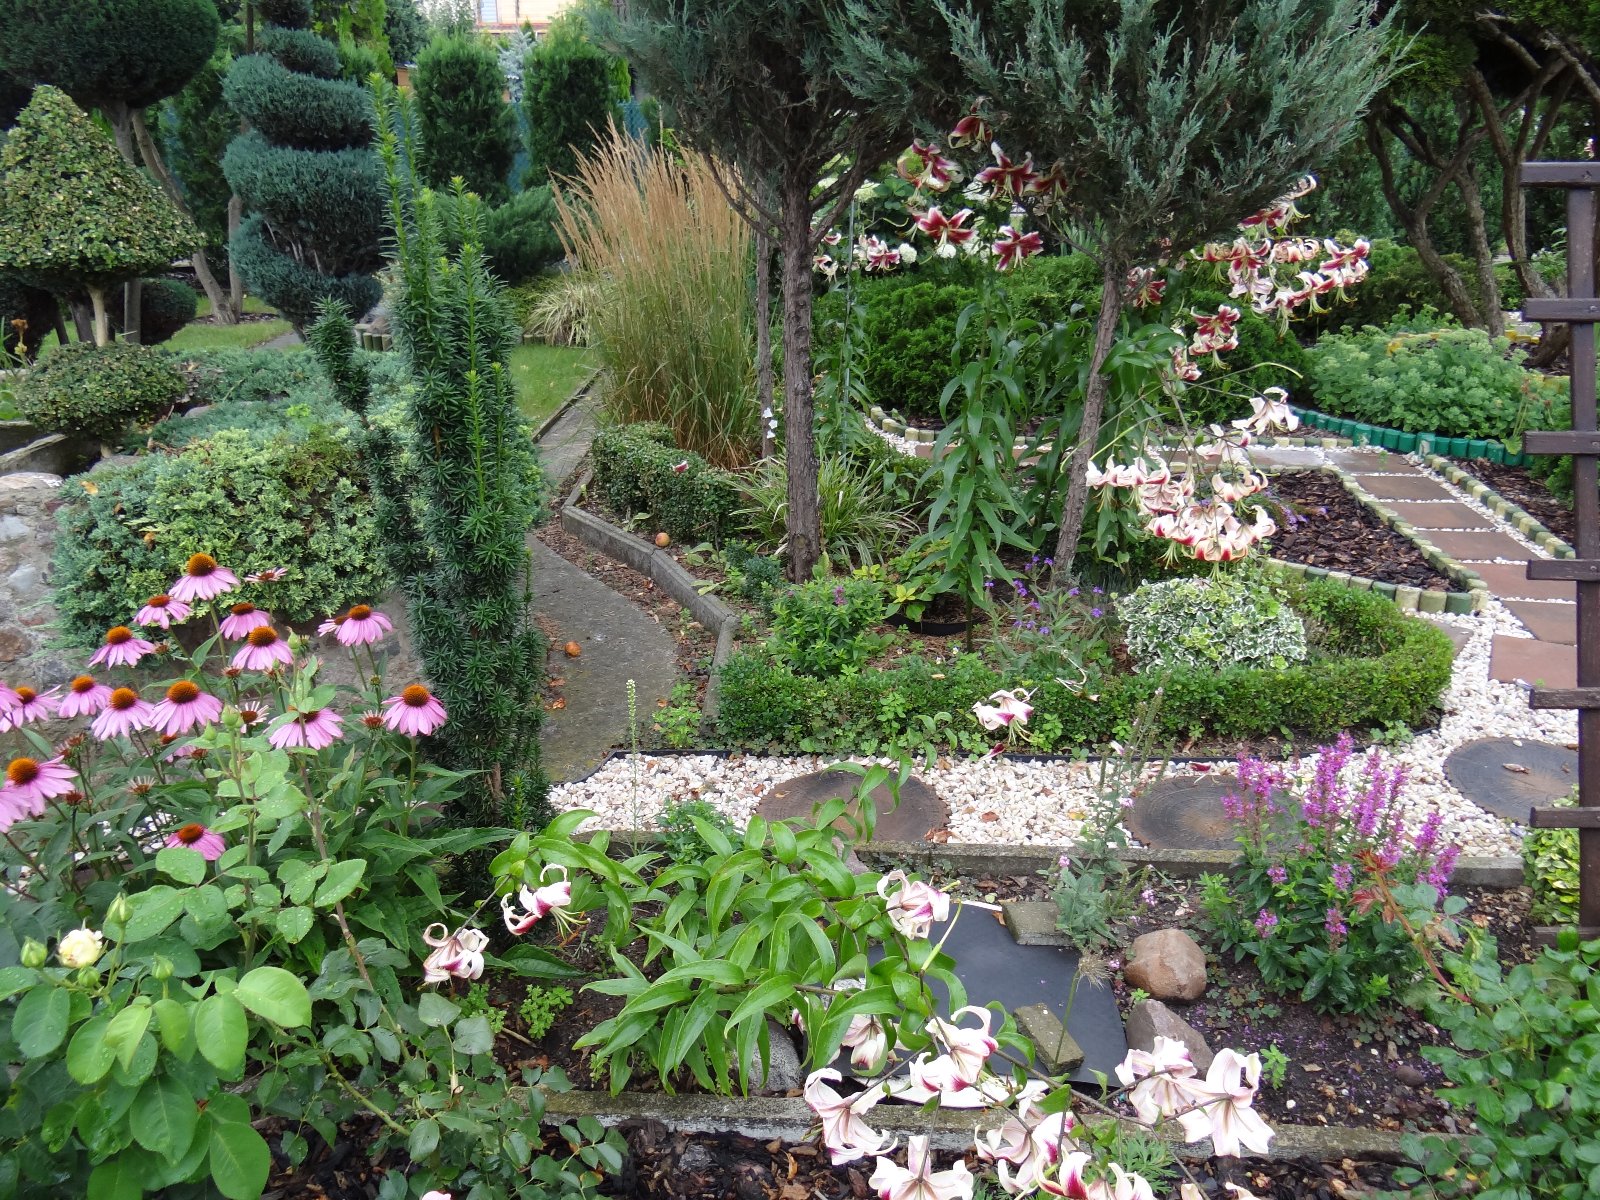 Jeżówka purpurowa,na pierwszym planie widać różowe jeżówki, białe lilie w dalszej części działki ogrodowej widać kompozycje z roślin zimozielonych bukszpanów, trzmieliny, rozchodnikach wyniosłego, trawy ozdobne oraz rołśiny iglaste